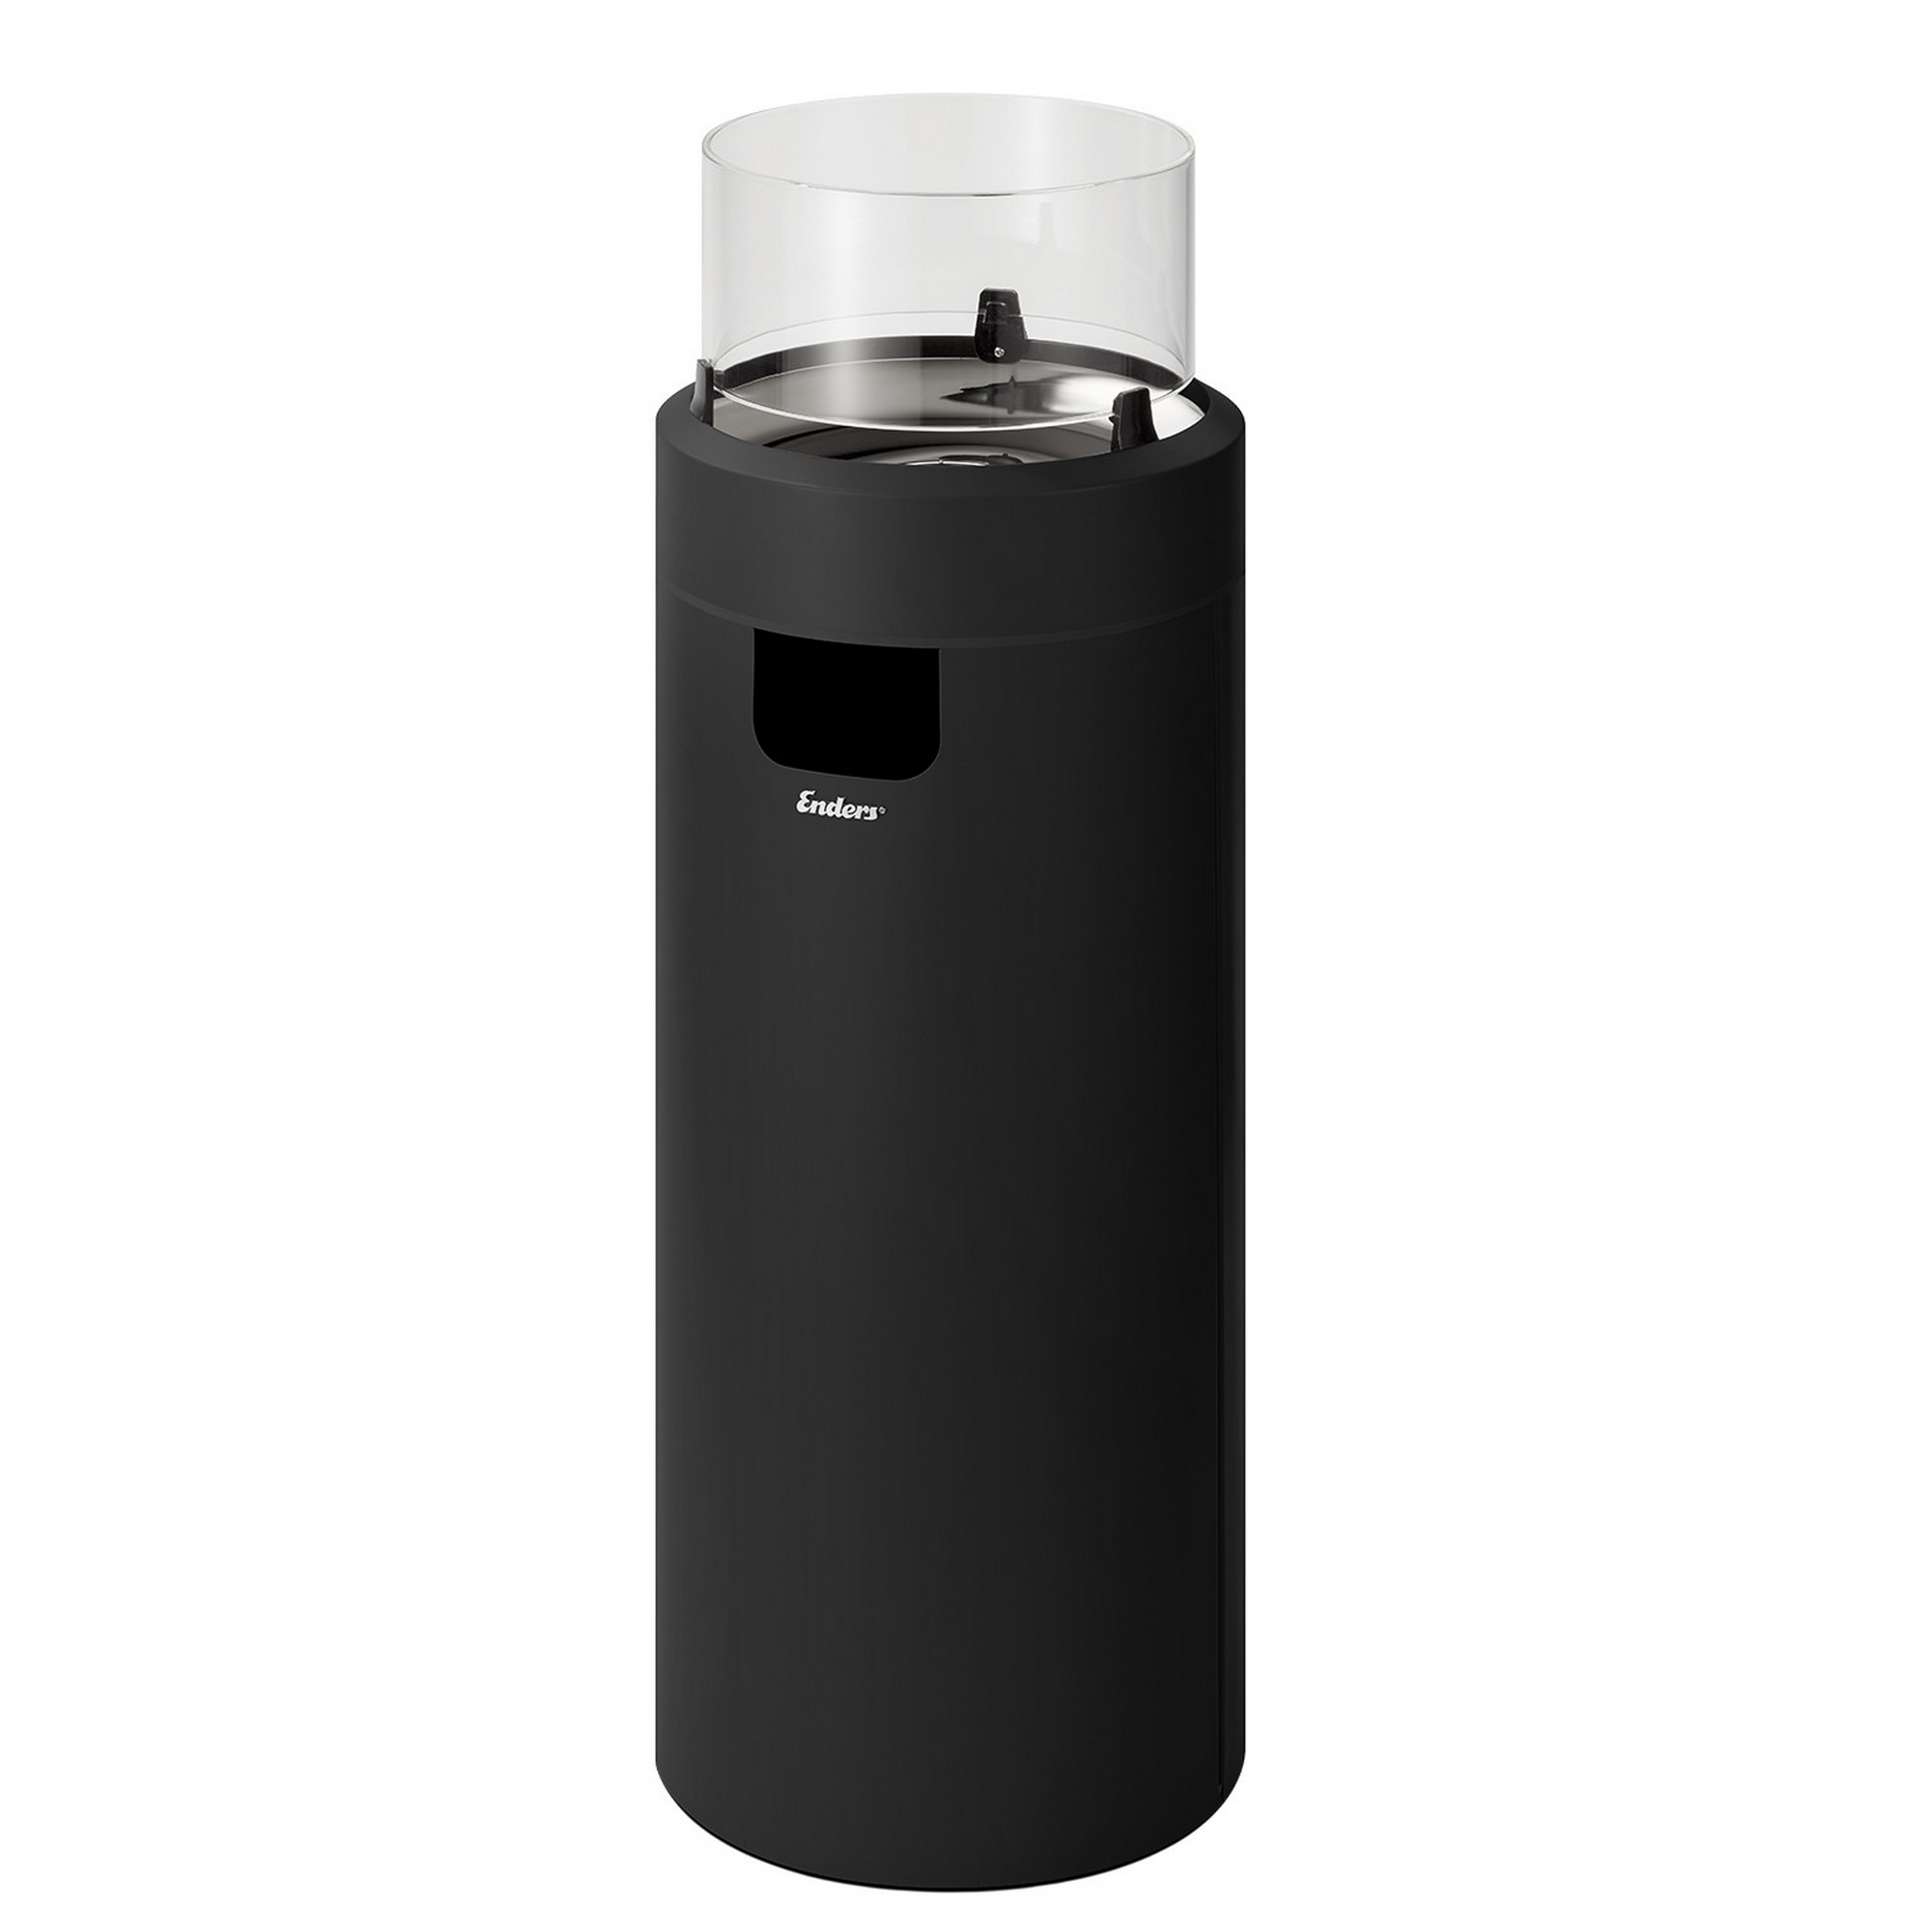 Gas-Feuerstelle 'Nova LED L' mit Schutzhülle, schwarz, Ø 36 x 102 cm + product picture